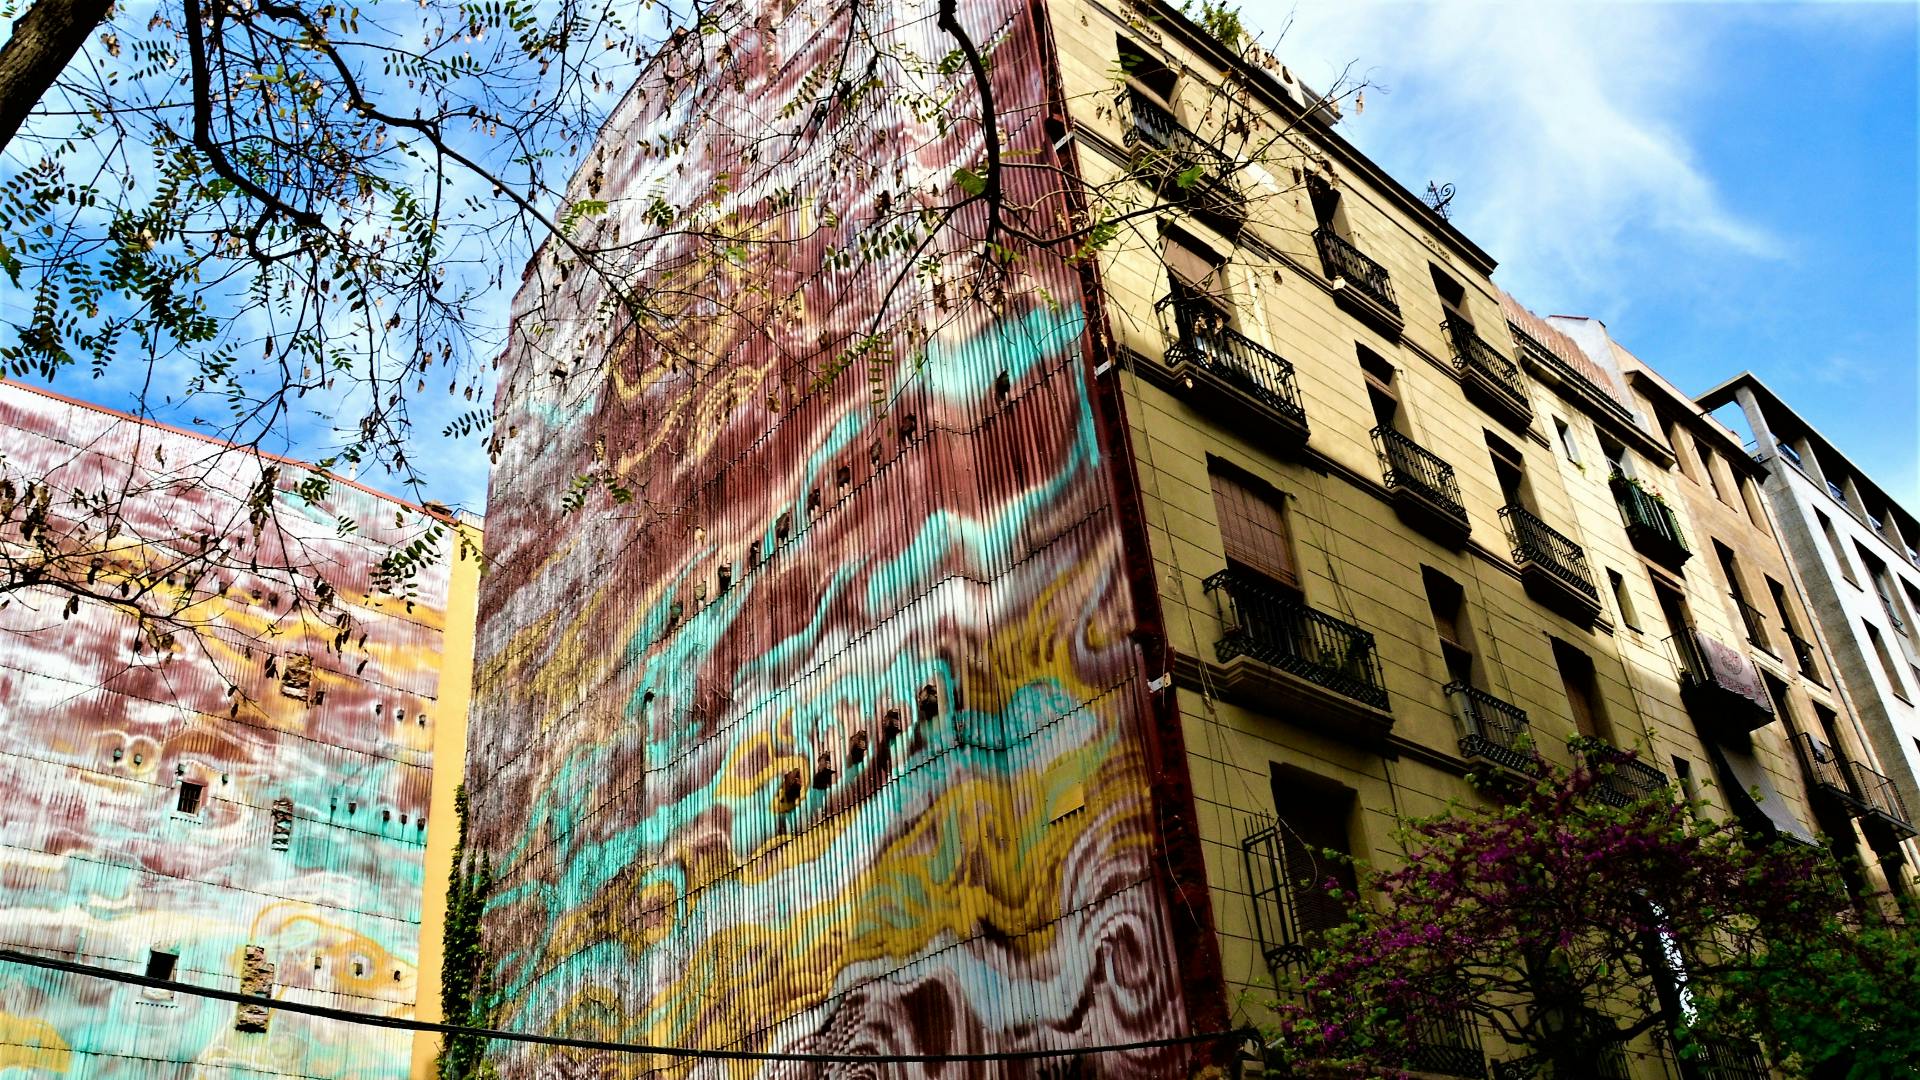 Jeu de découverte des ruelles secrètes et des ruines de la vieille ville de Barcelone